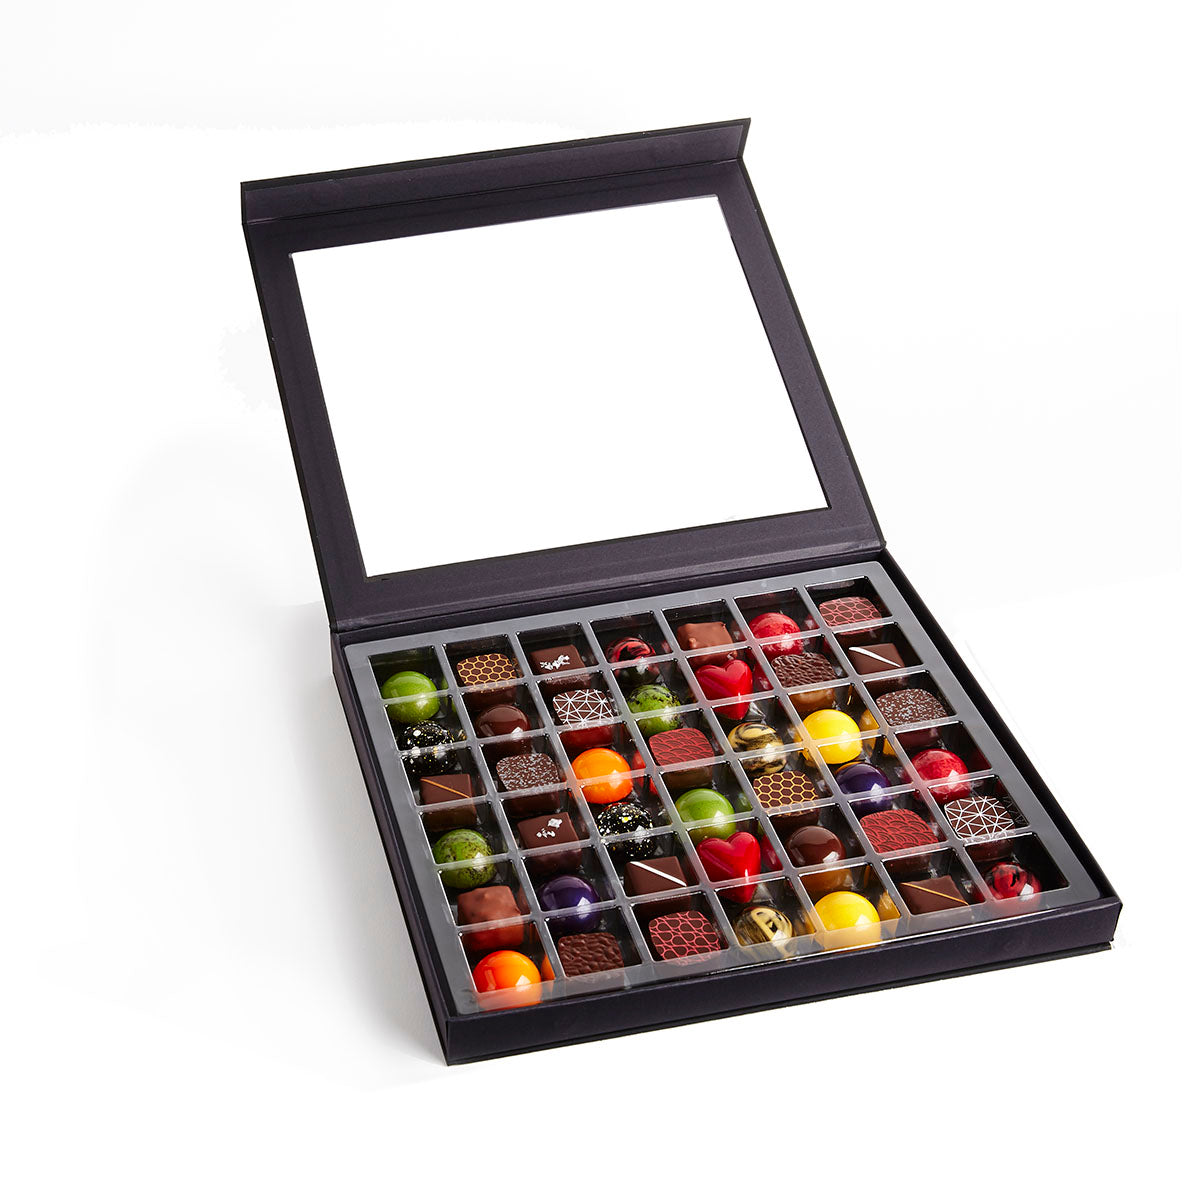 Beautiful 42 piece box of dark chocolate truffles and milk chocolate truffles featuring natural ingredients and sustainable chocolate